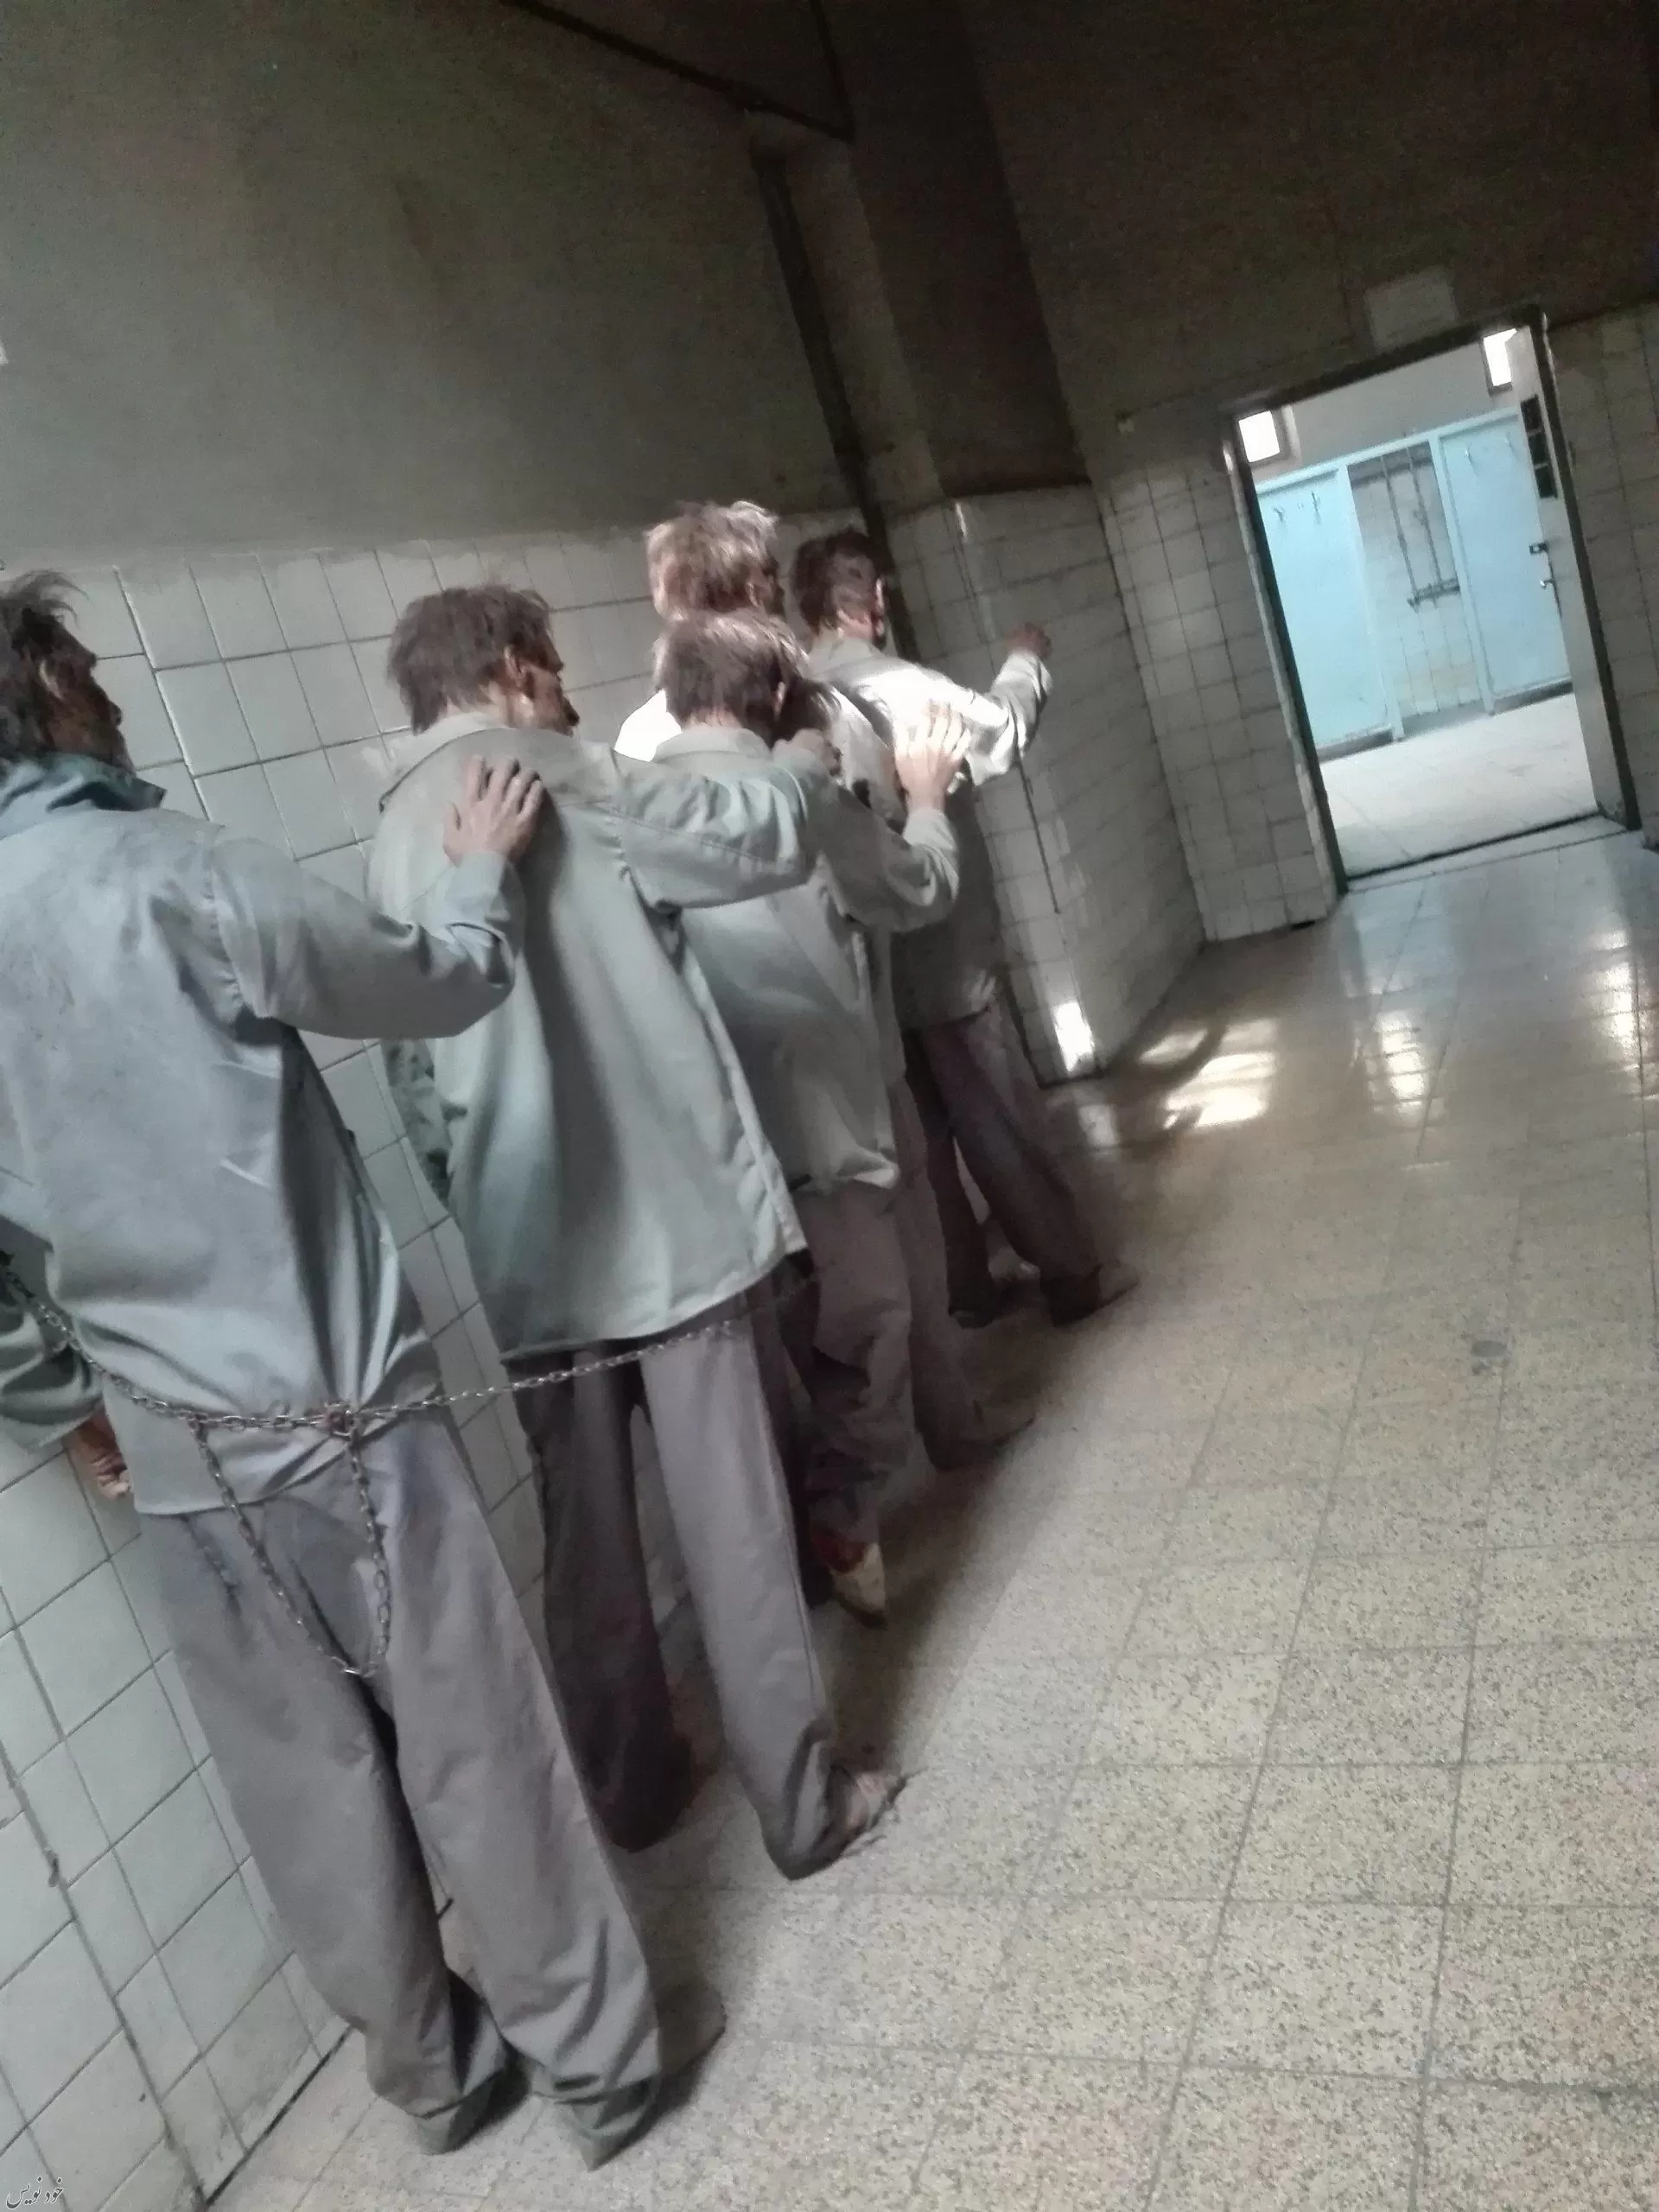 موزه عبرت تهران ؛ مخوفترین شکنجهگاه ایران در زمان پهلوی + عکس ها یاین موزه